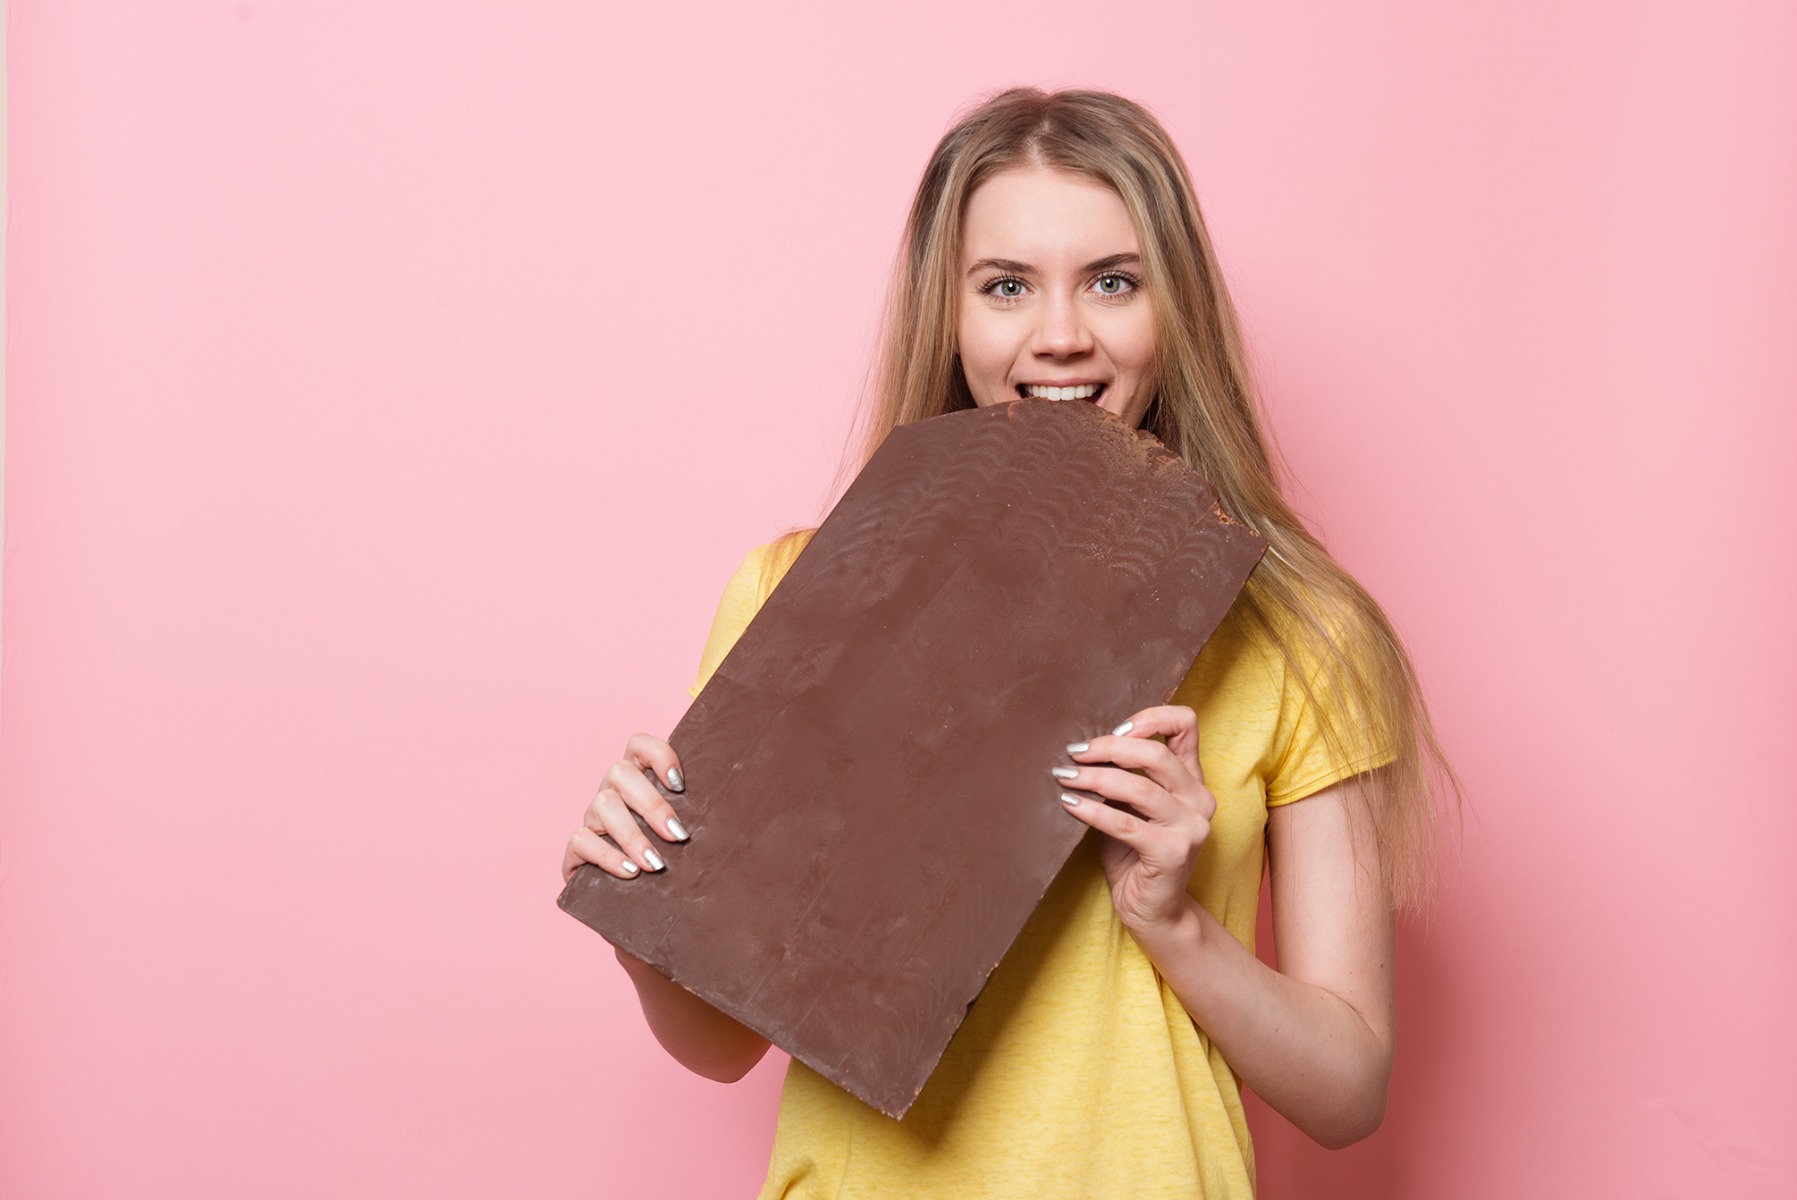 Grote chocoladereep als examencadeautip 2021